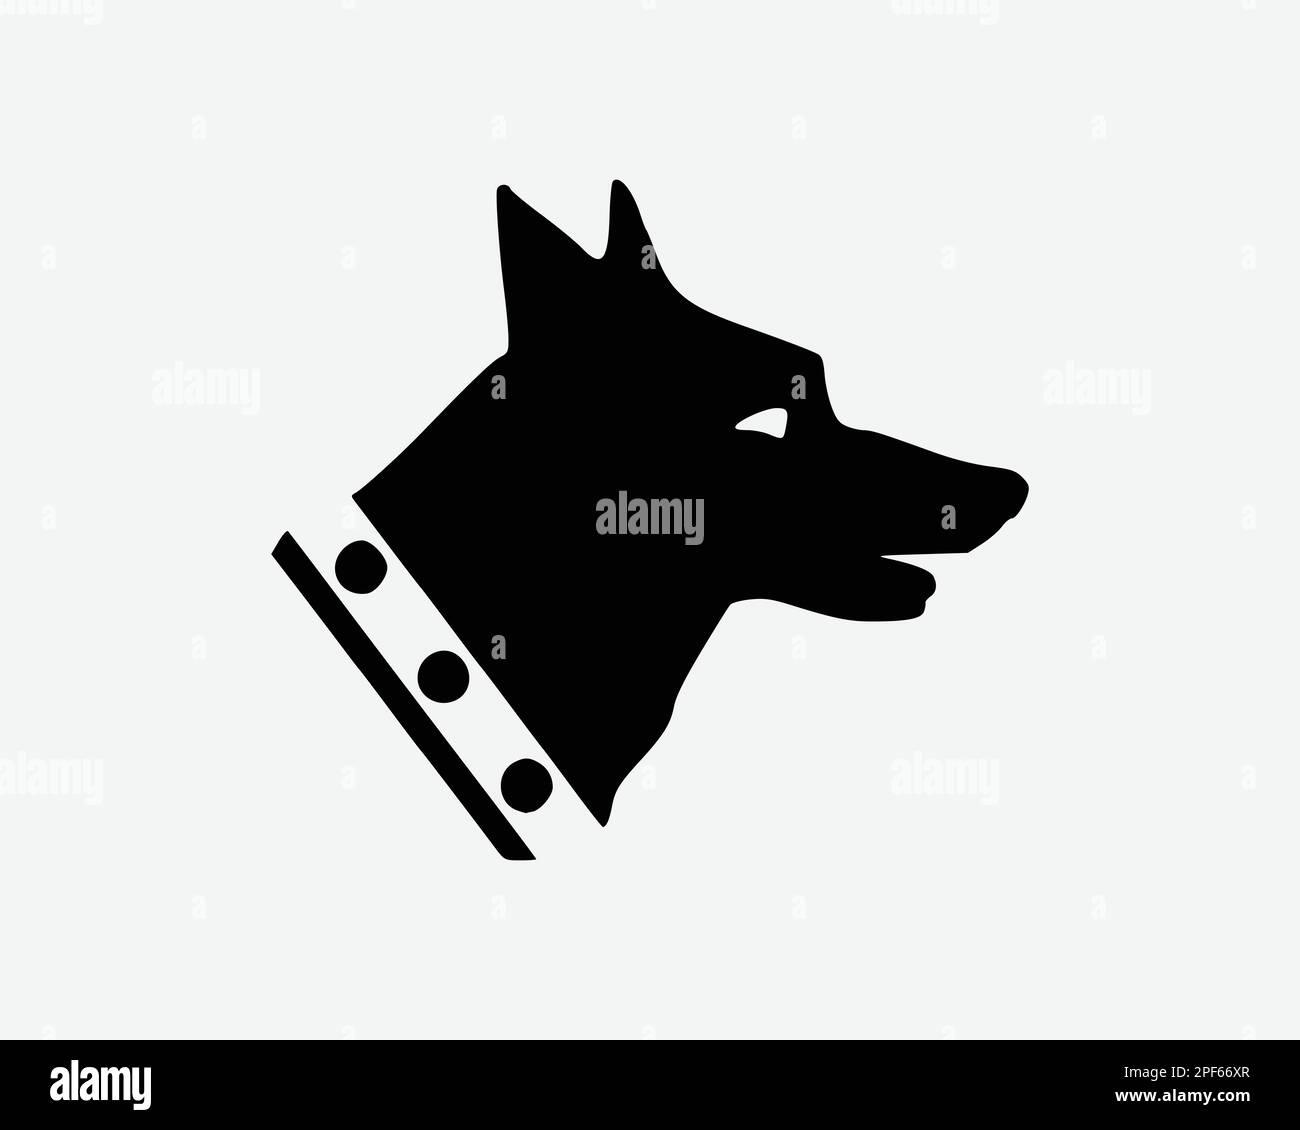 Guard Dog icona German Shepherd Head Police Service Canine Vector Black White Silhouette simbolo segno grafico clipart illustrazione pittogramma Illustrazione Vettoriale